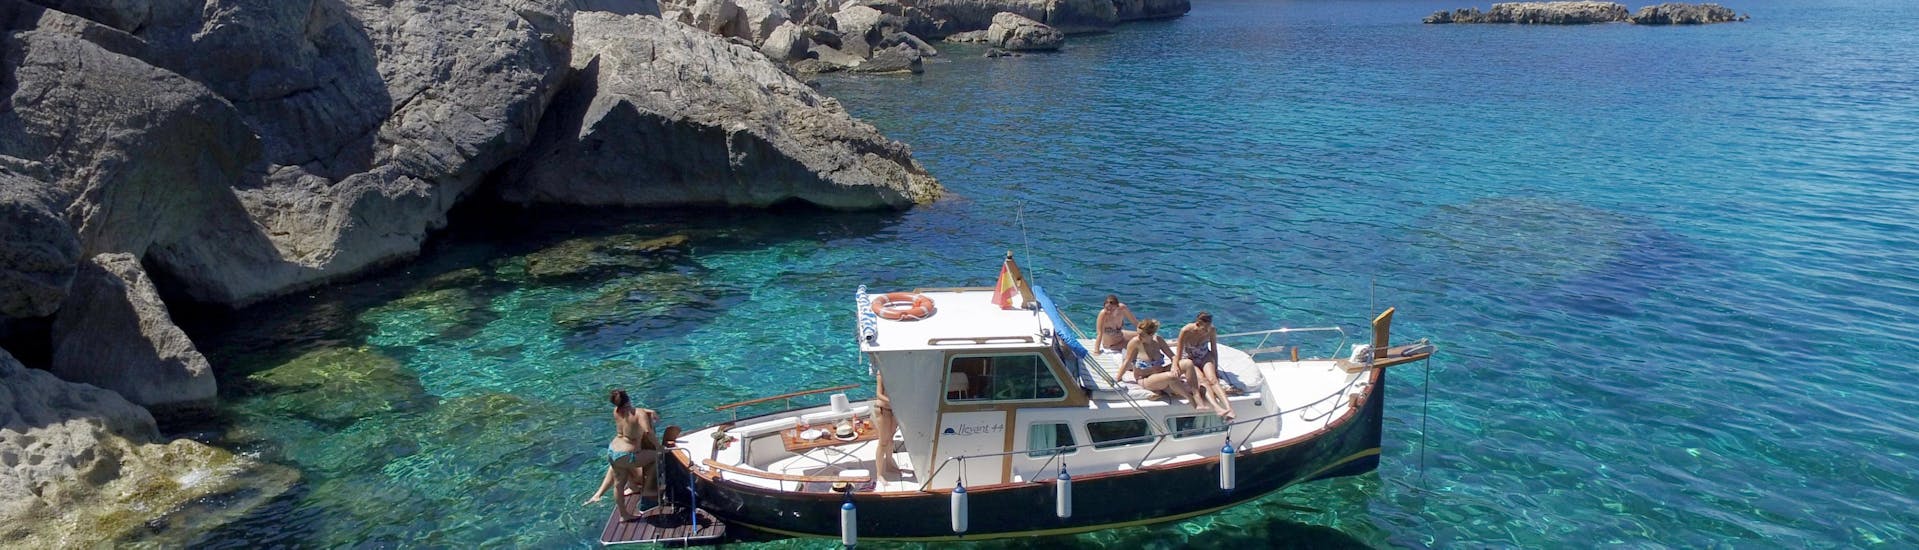 Ein Boot von Take Off Ibiza schwimmt im kristallklaren Wasser während einer privaten Bootsfahrt entlang der Küste von Ibiza.